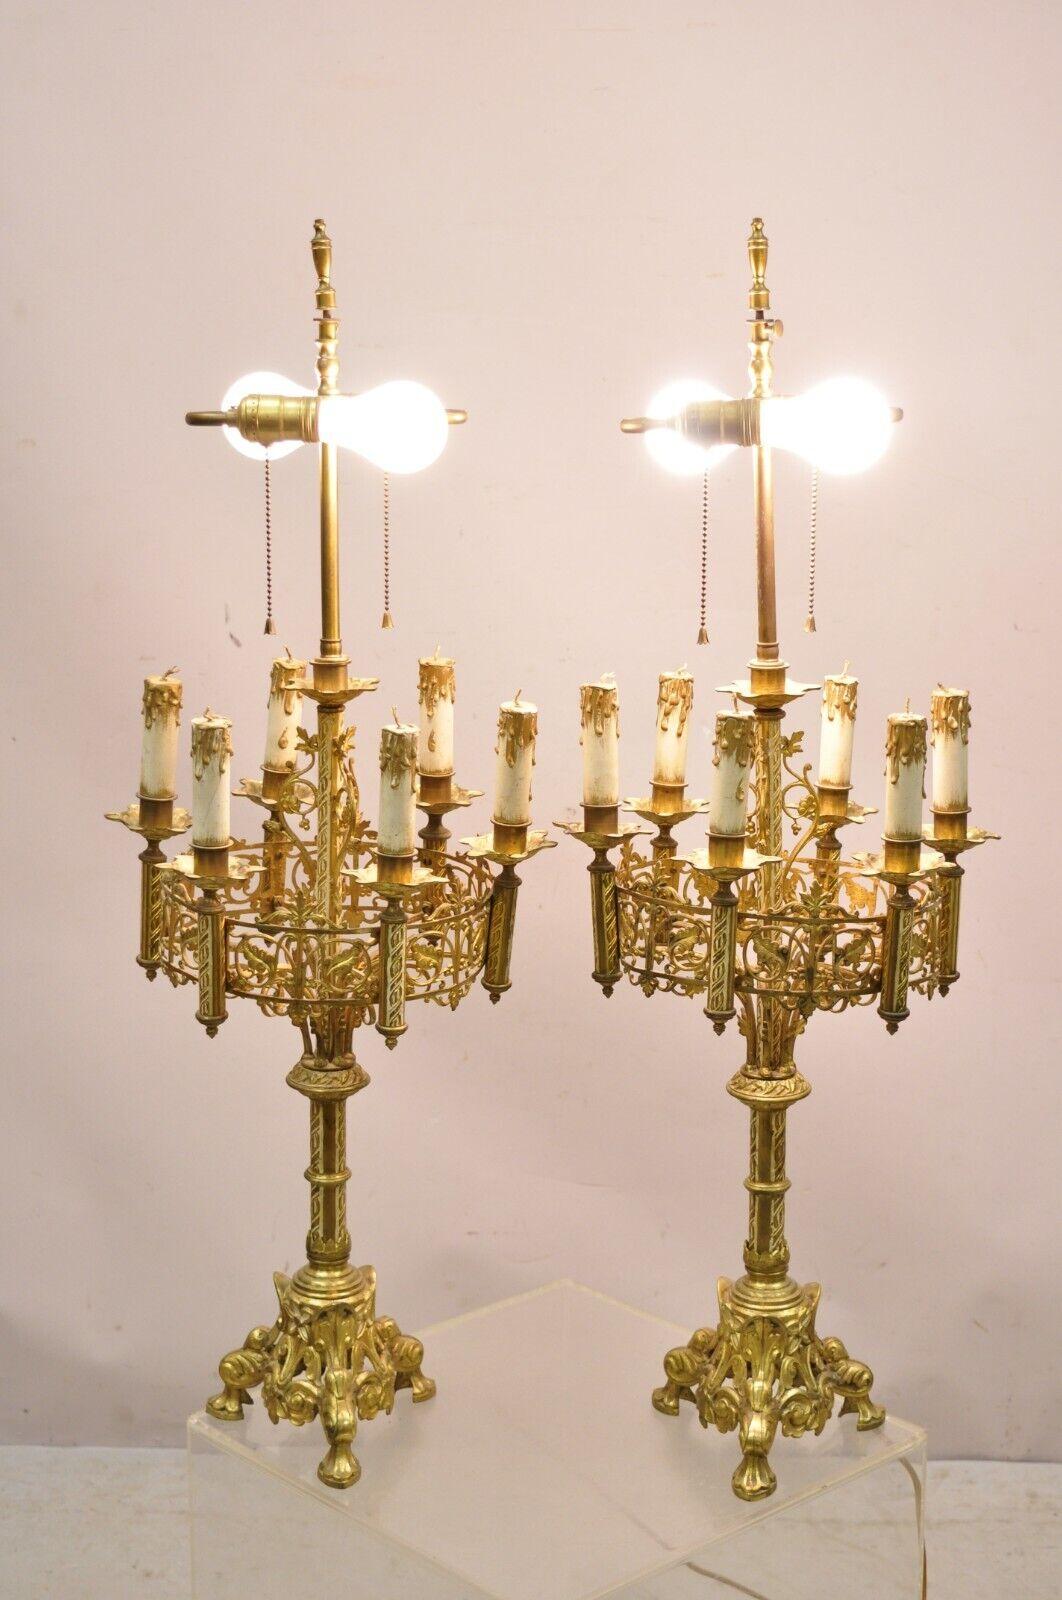 Antique Gothic Revival Gold Bronze Figural Candelabra Table Lamps - a Pair. Cet article présente des bougies décoratives en bois, des douilles doubles, des cadres décorés et percés, une très belle paire ancienne, un travail de qualité, un style et